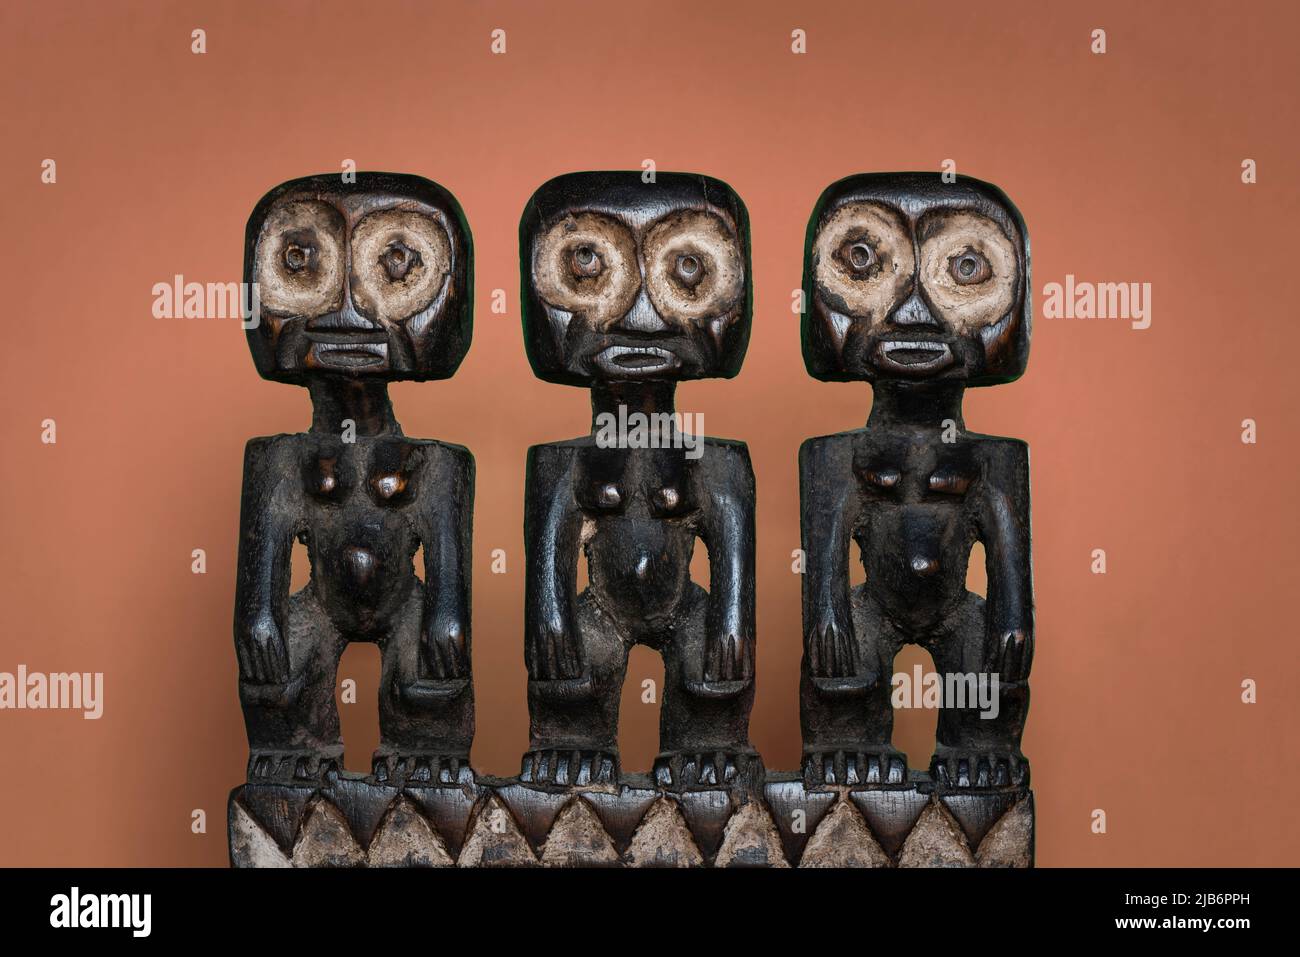 Figuras humanas artesanales de madera tribal africana. Símbolo de fertilidad. Creación decorativa sudafricana. Foto de stock